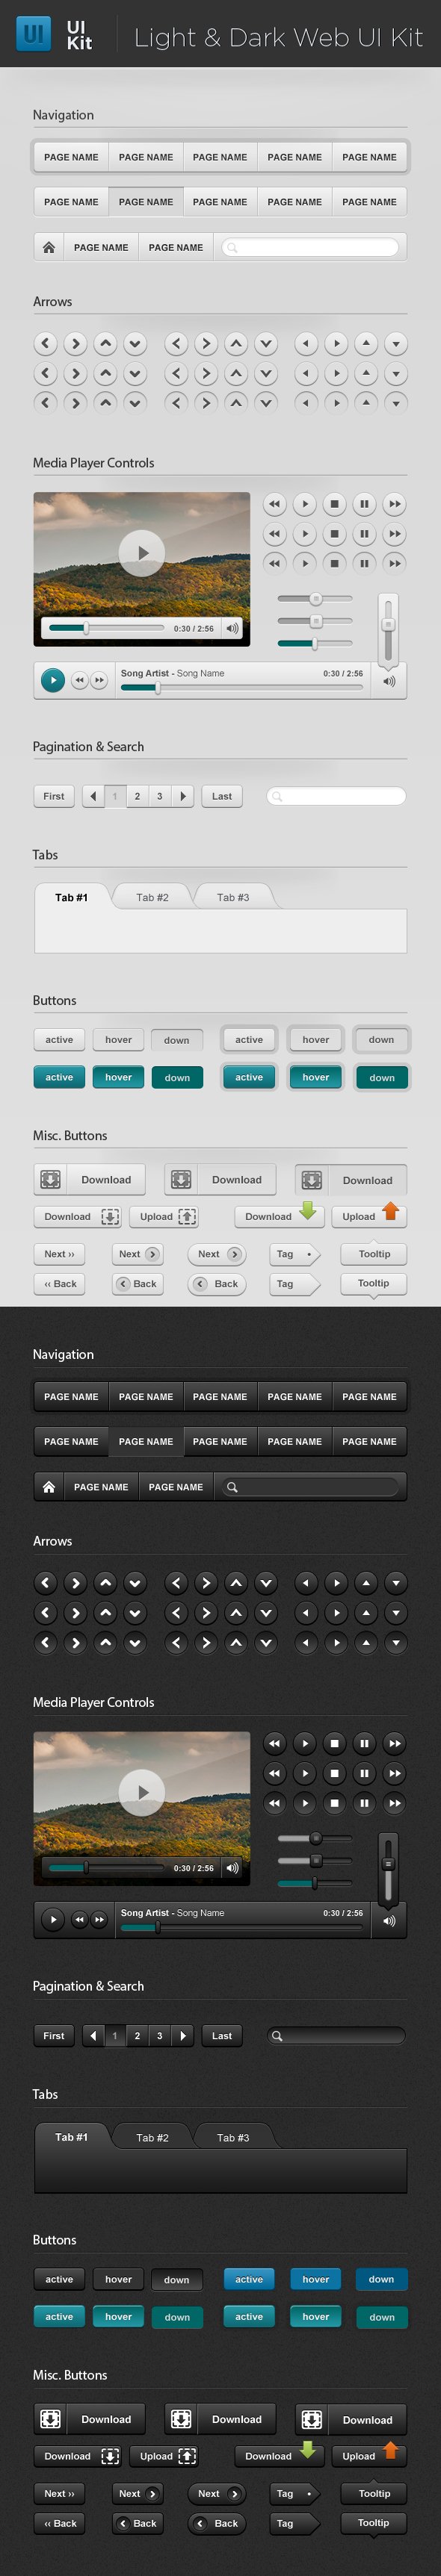 Light & Dark Web UI Starter Kit cover image.